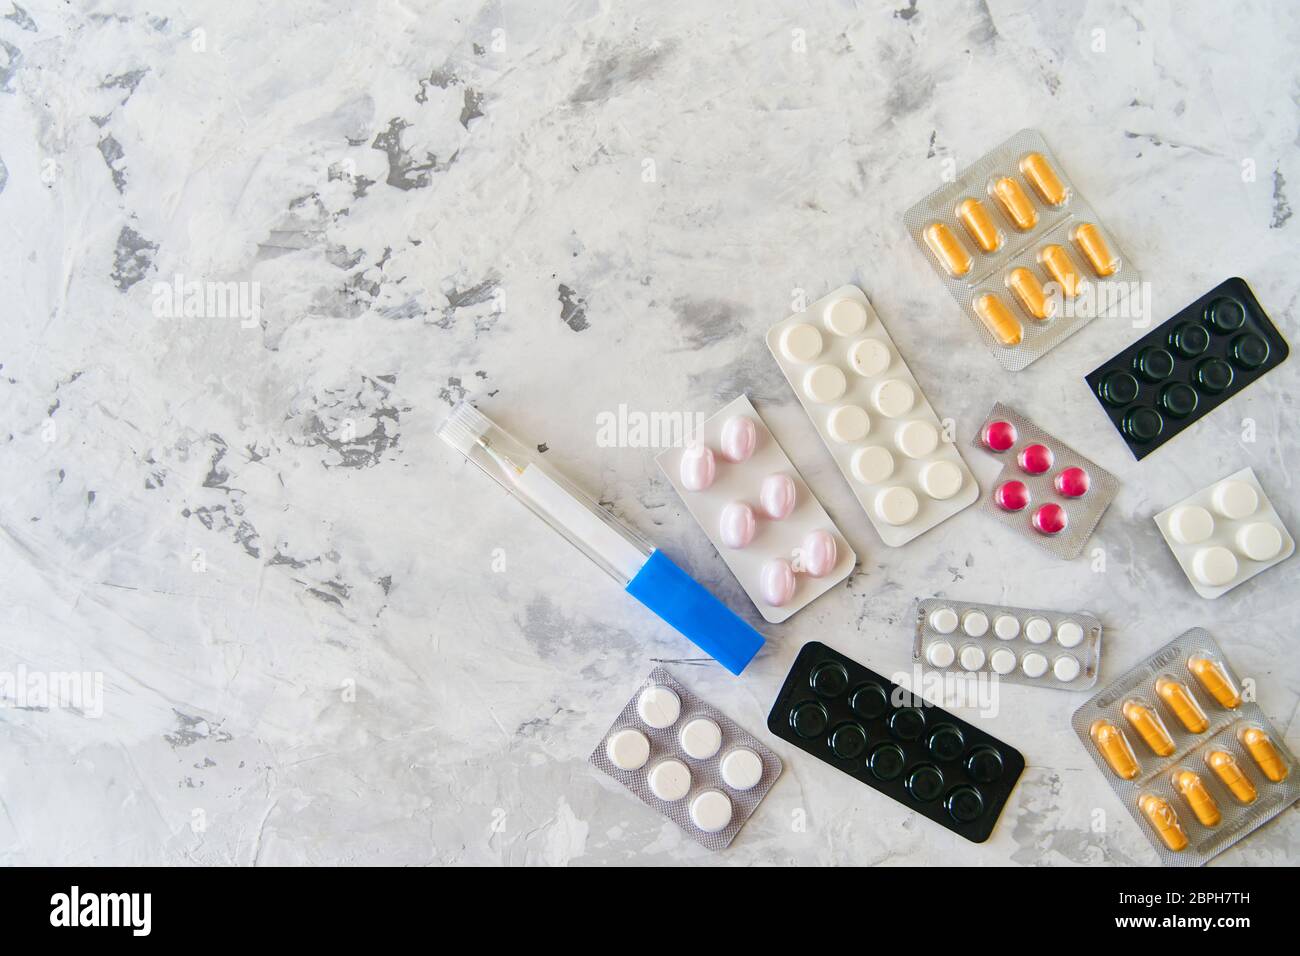 Pillole capsule medicina salute su sfondo chiaro, vista dall'alto Foto Stock